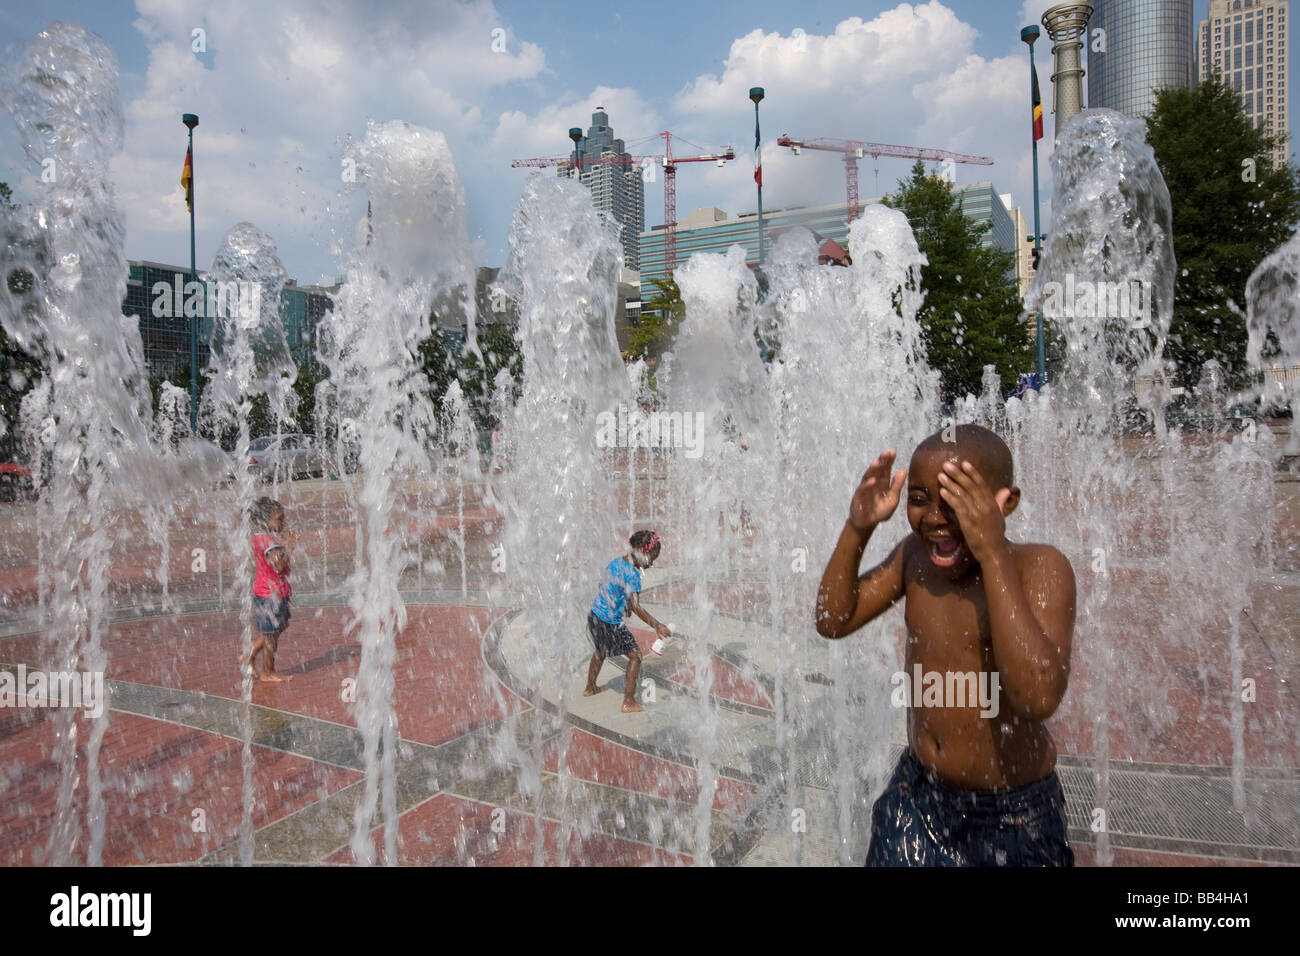 Children play in the Centennial Park Fountain, Atlanta, GA Stock Photo